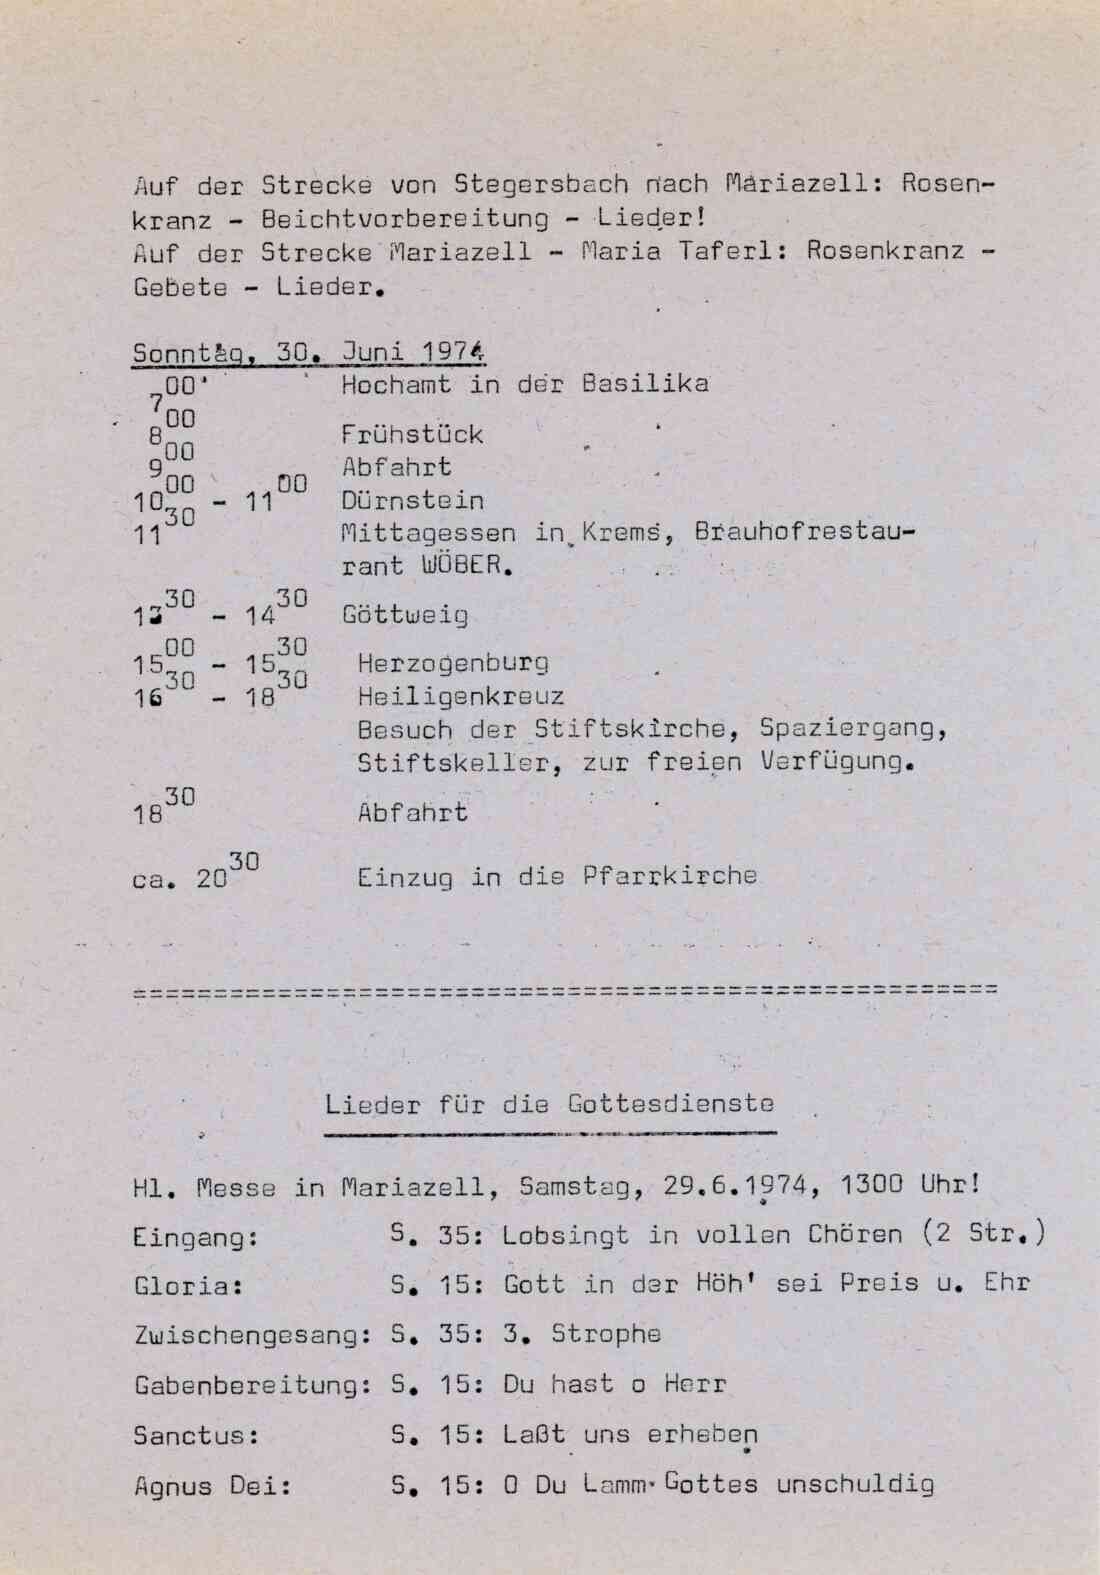 Katholische Jugend, Pfarrwallfahrt nach Mariazell und Maria Taferl am 29 und 30 Juni 1974